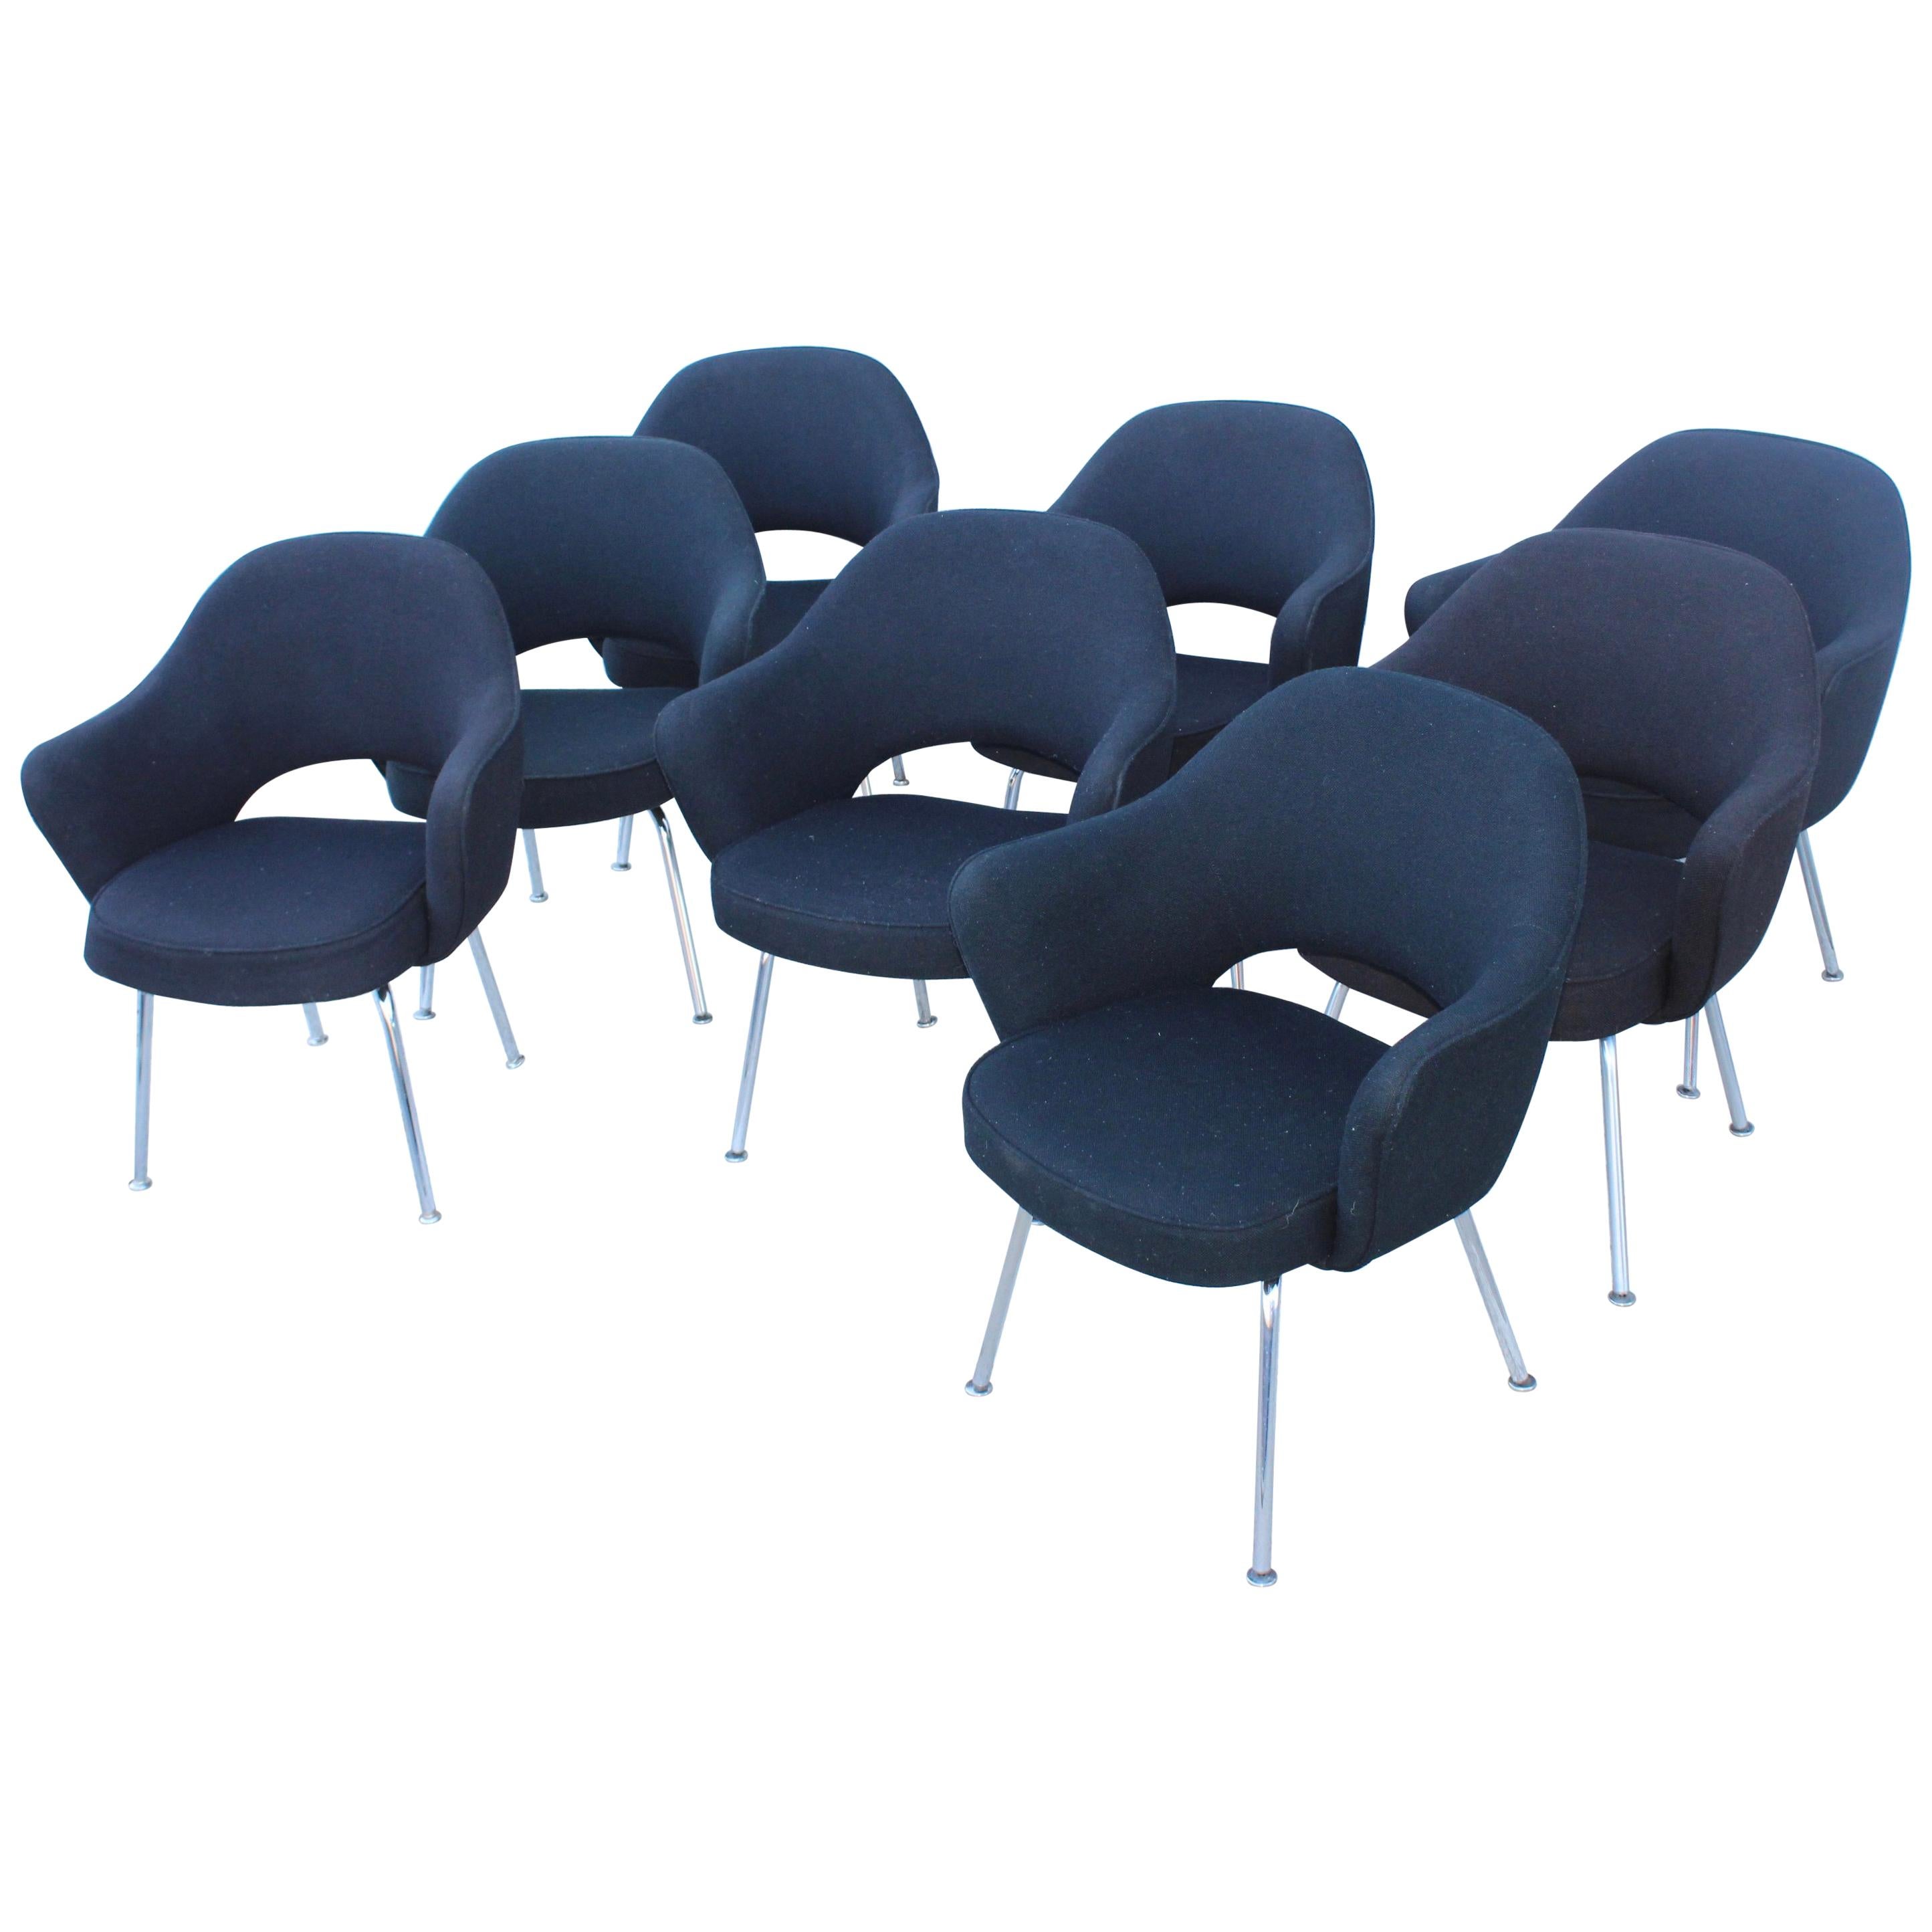 Eight Eero Saarinen Executive Chairs